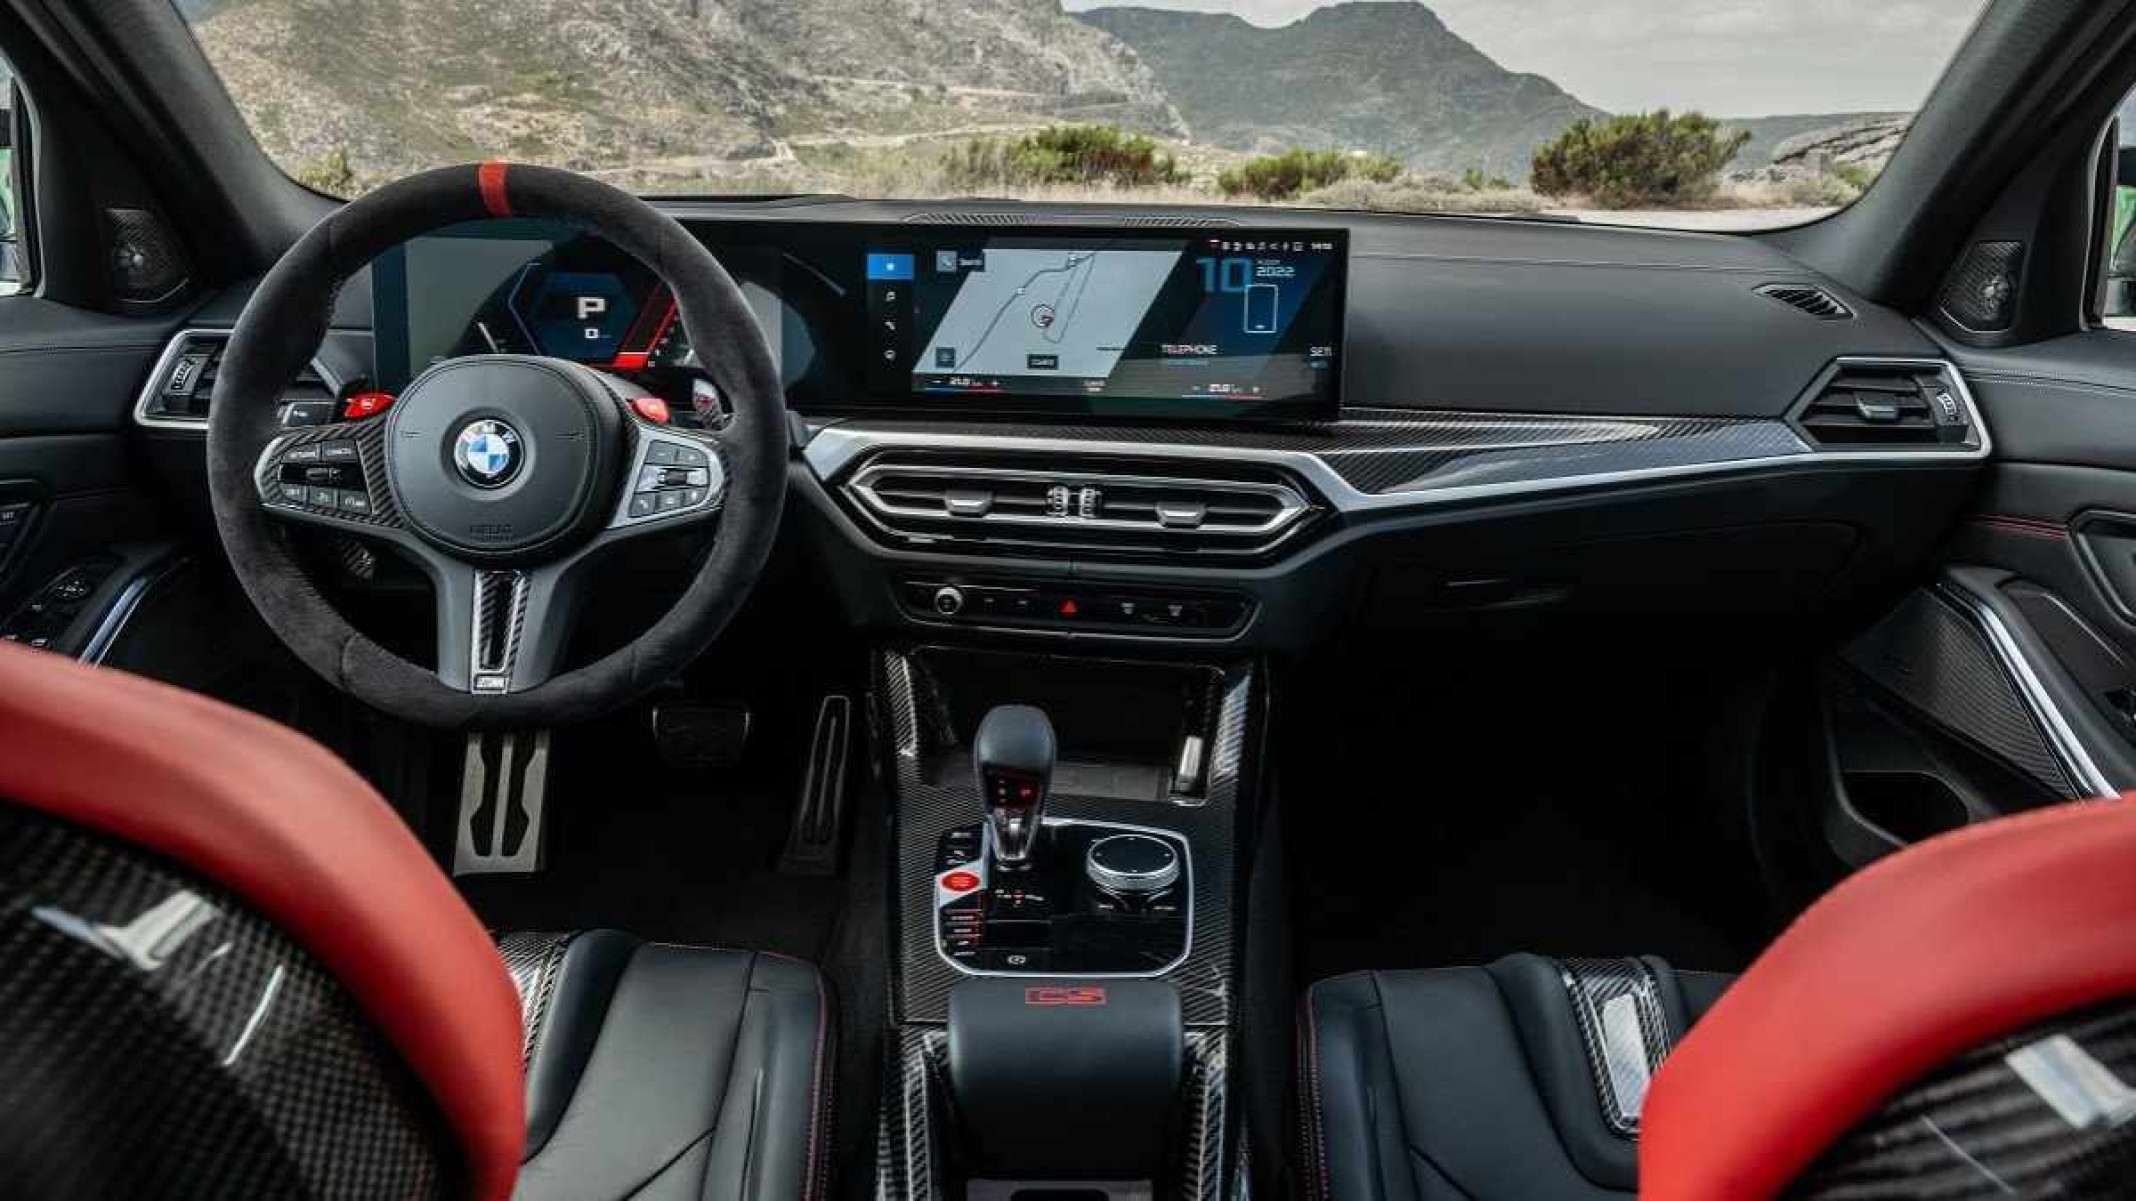 Novo painel do BMW M3 CS com volante e multimídia